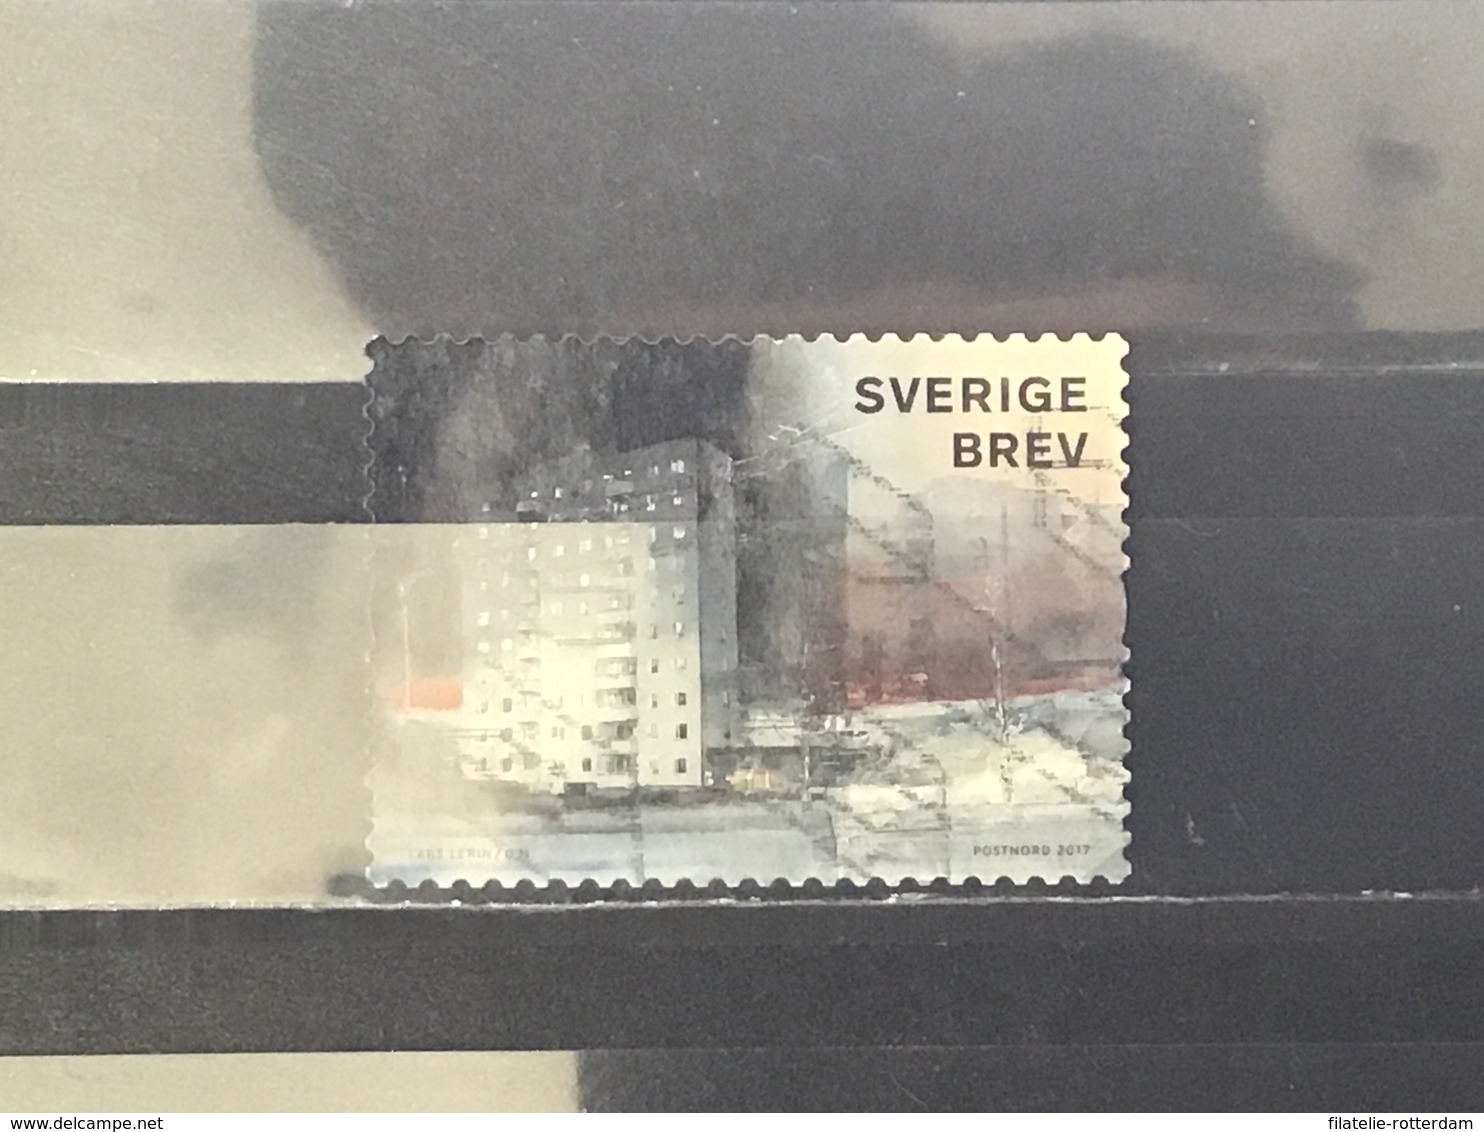 Zweden / Sweden - Lars Lerin (BREV) 2017 - Used Stamps